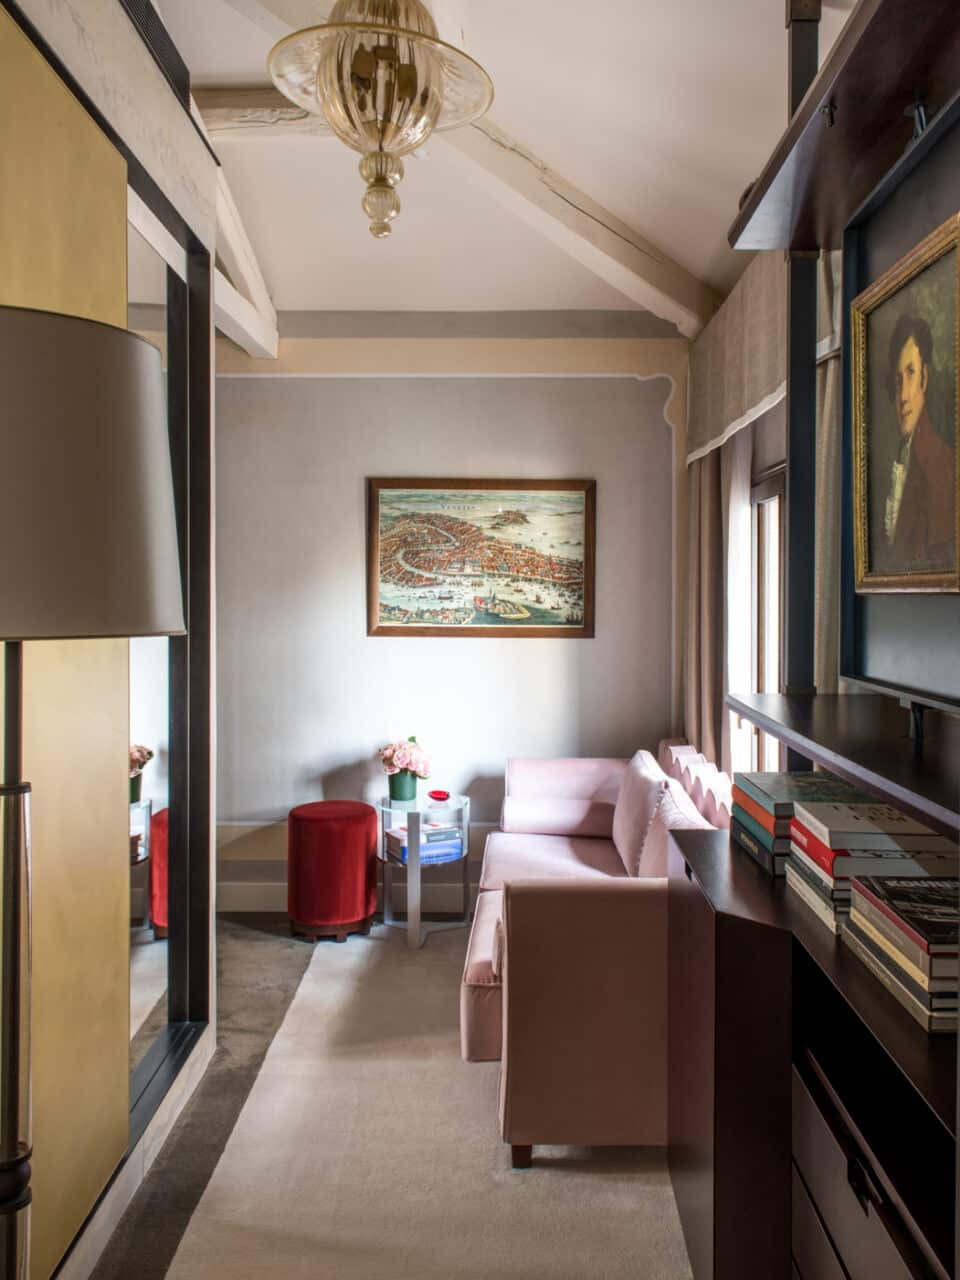 junior suite 5 star luxury hotel venice italy